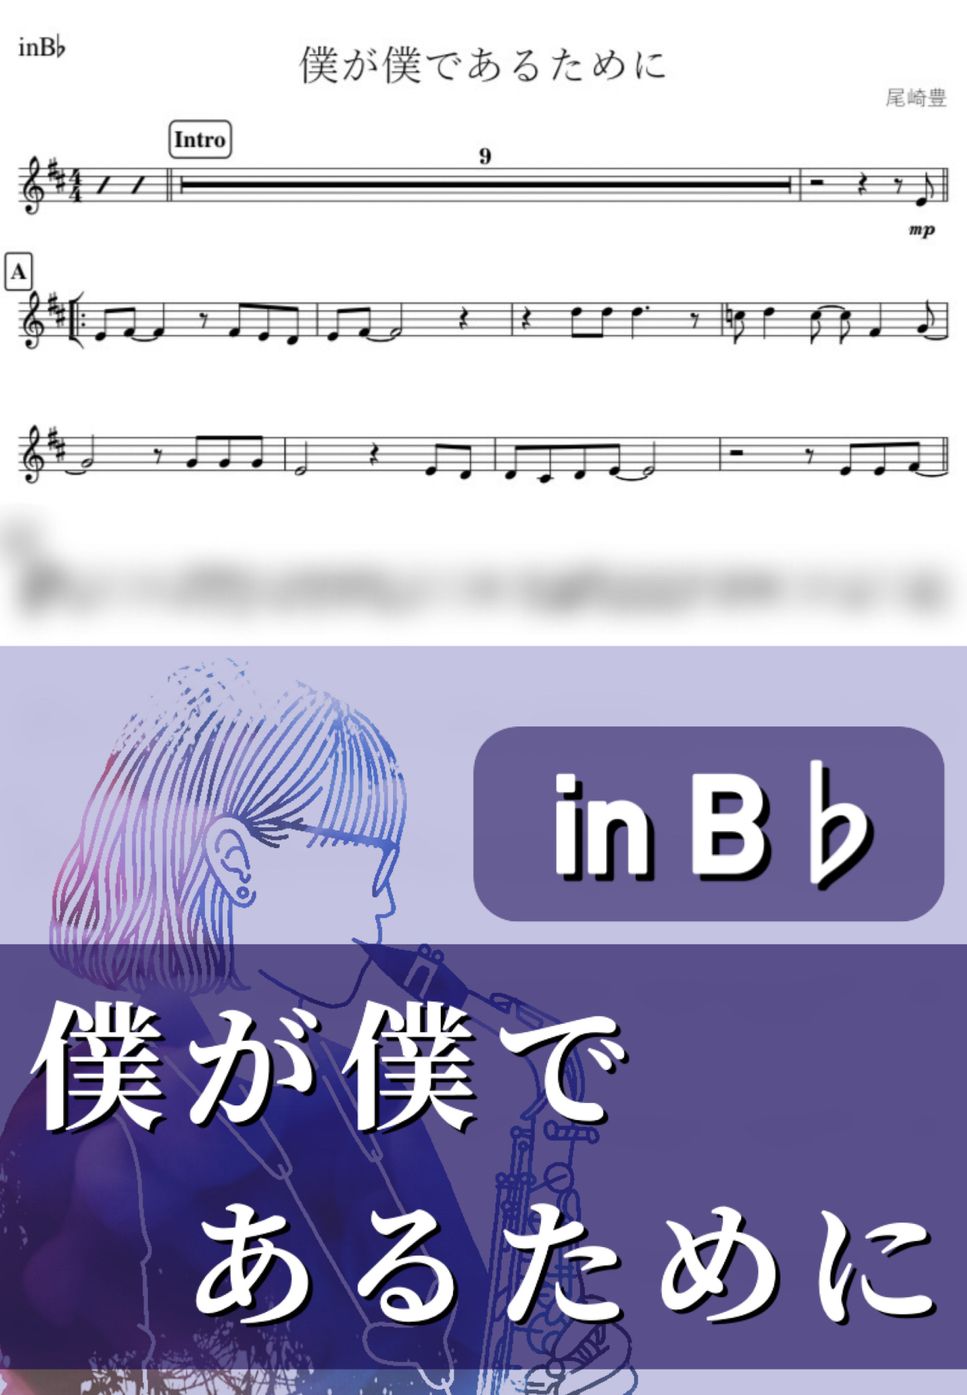 尾崎豊 - 僕が僕であるために (B♭) by kanamusic